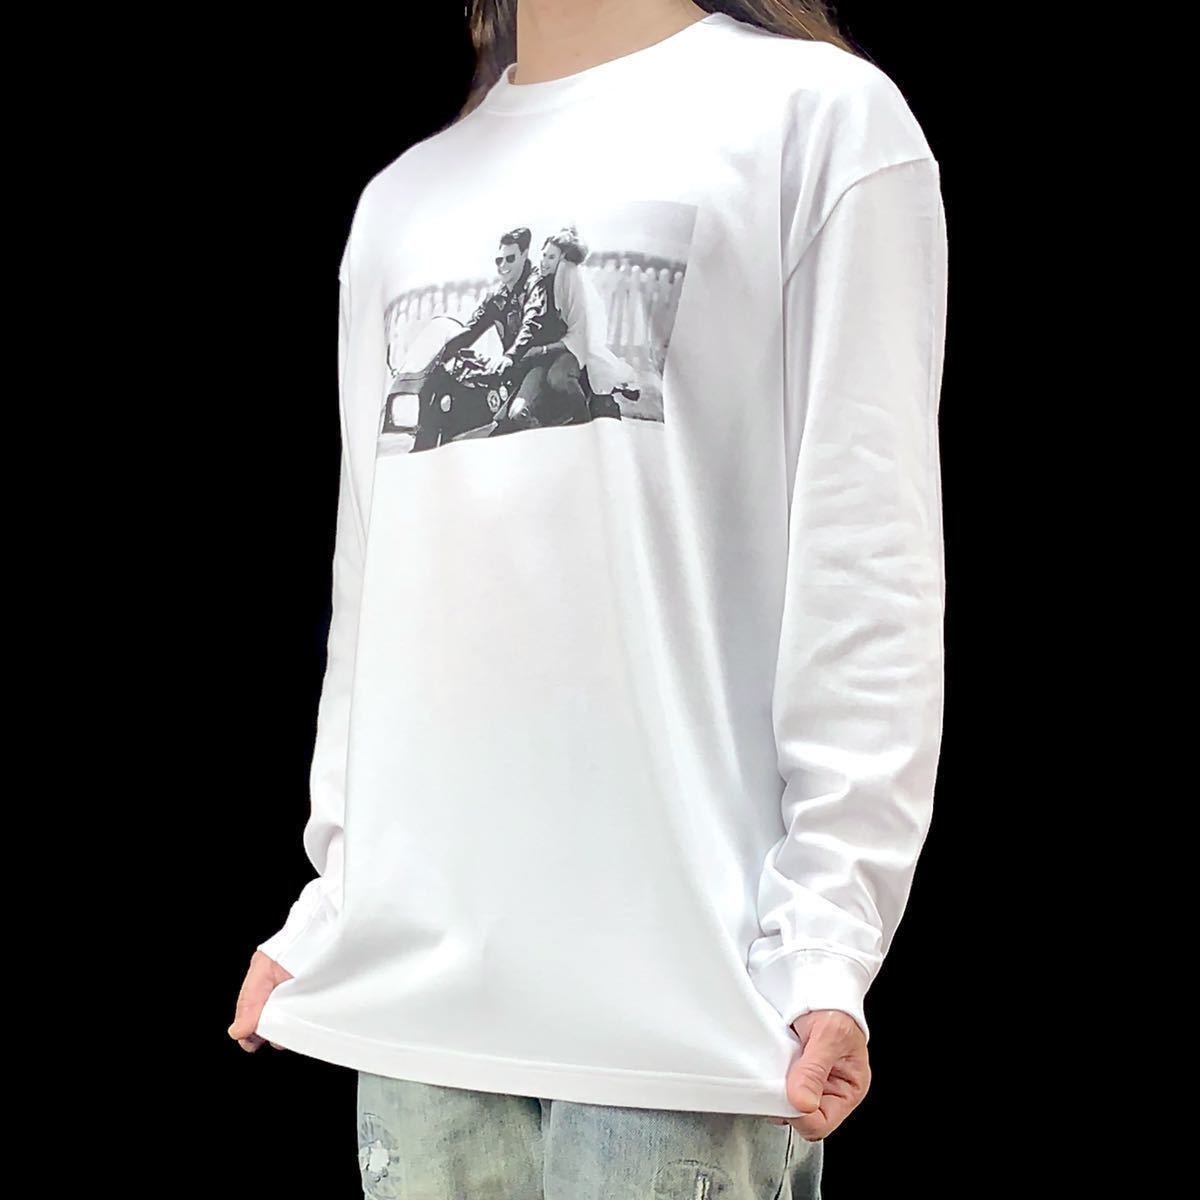 新品 トップガン マーヴェリック トムクルーズ映画 カワサキ バイク GPZ900R ニンジャ ロンT 長袖Tシャツ XS Sサイズ 小さい タイト スリム